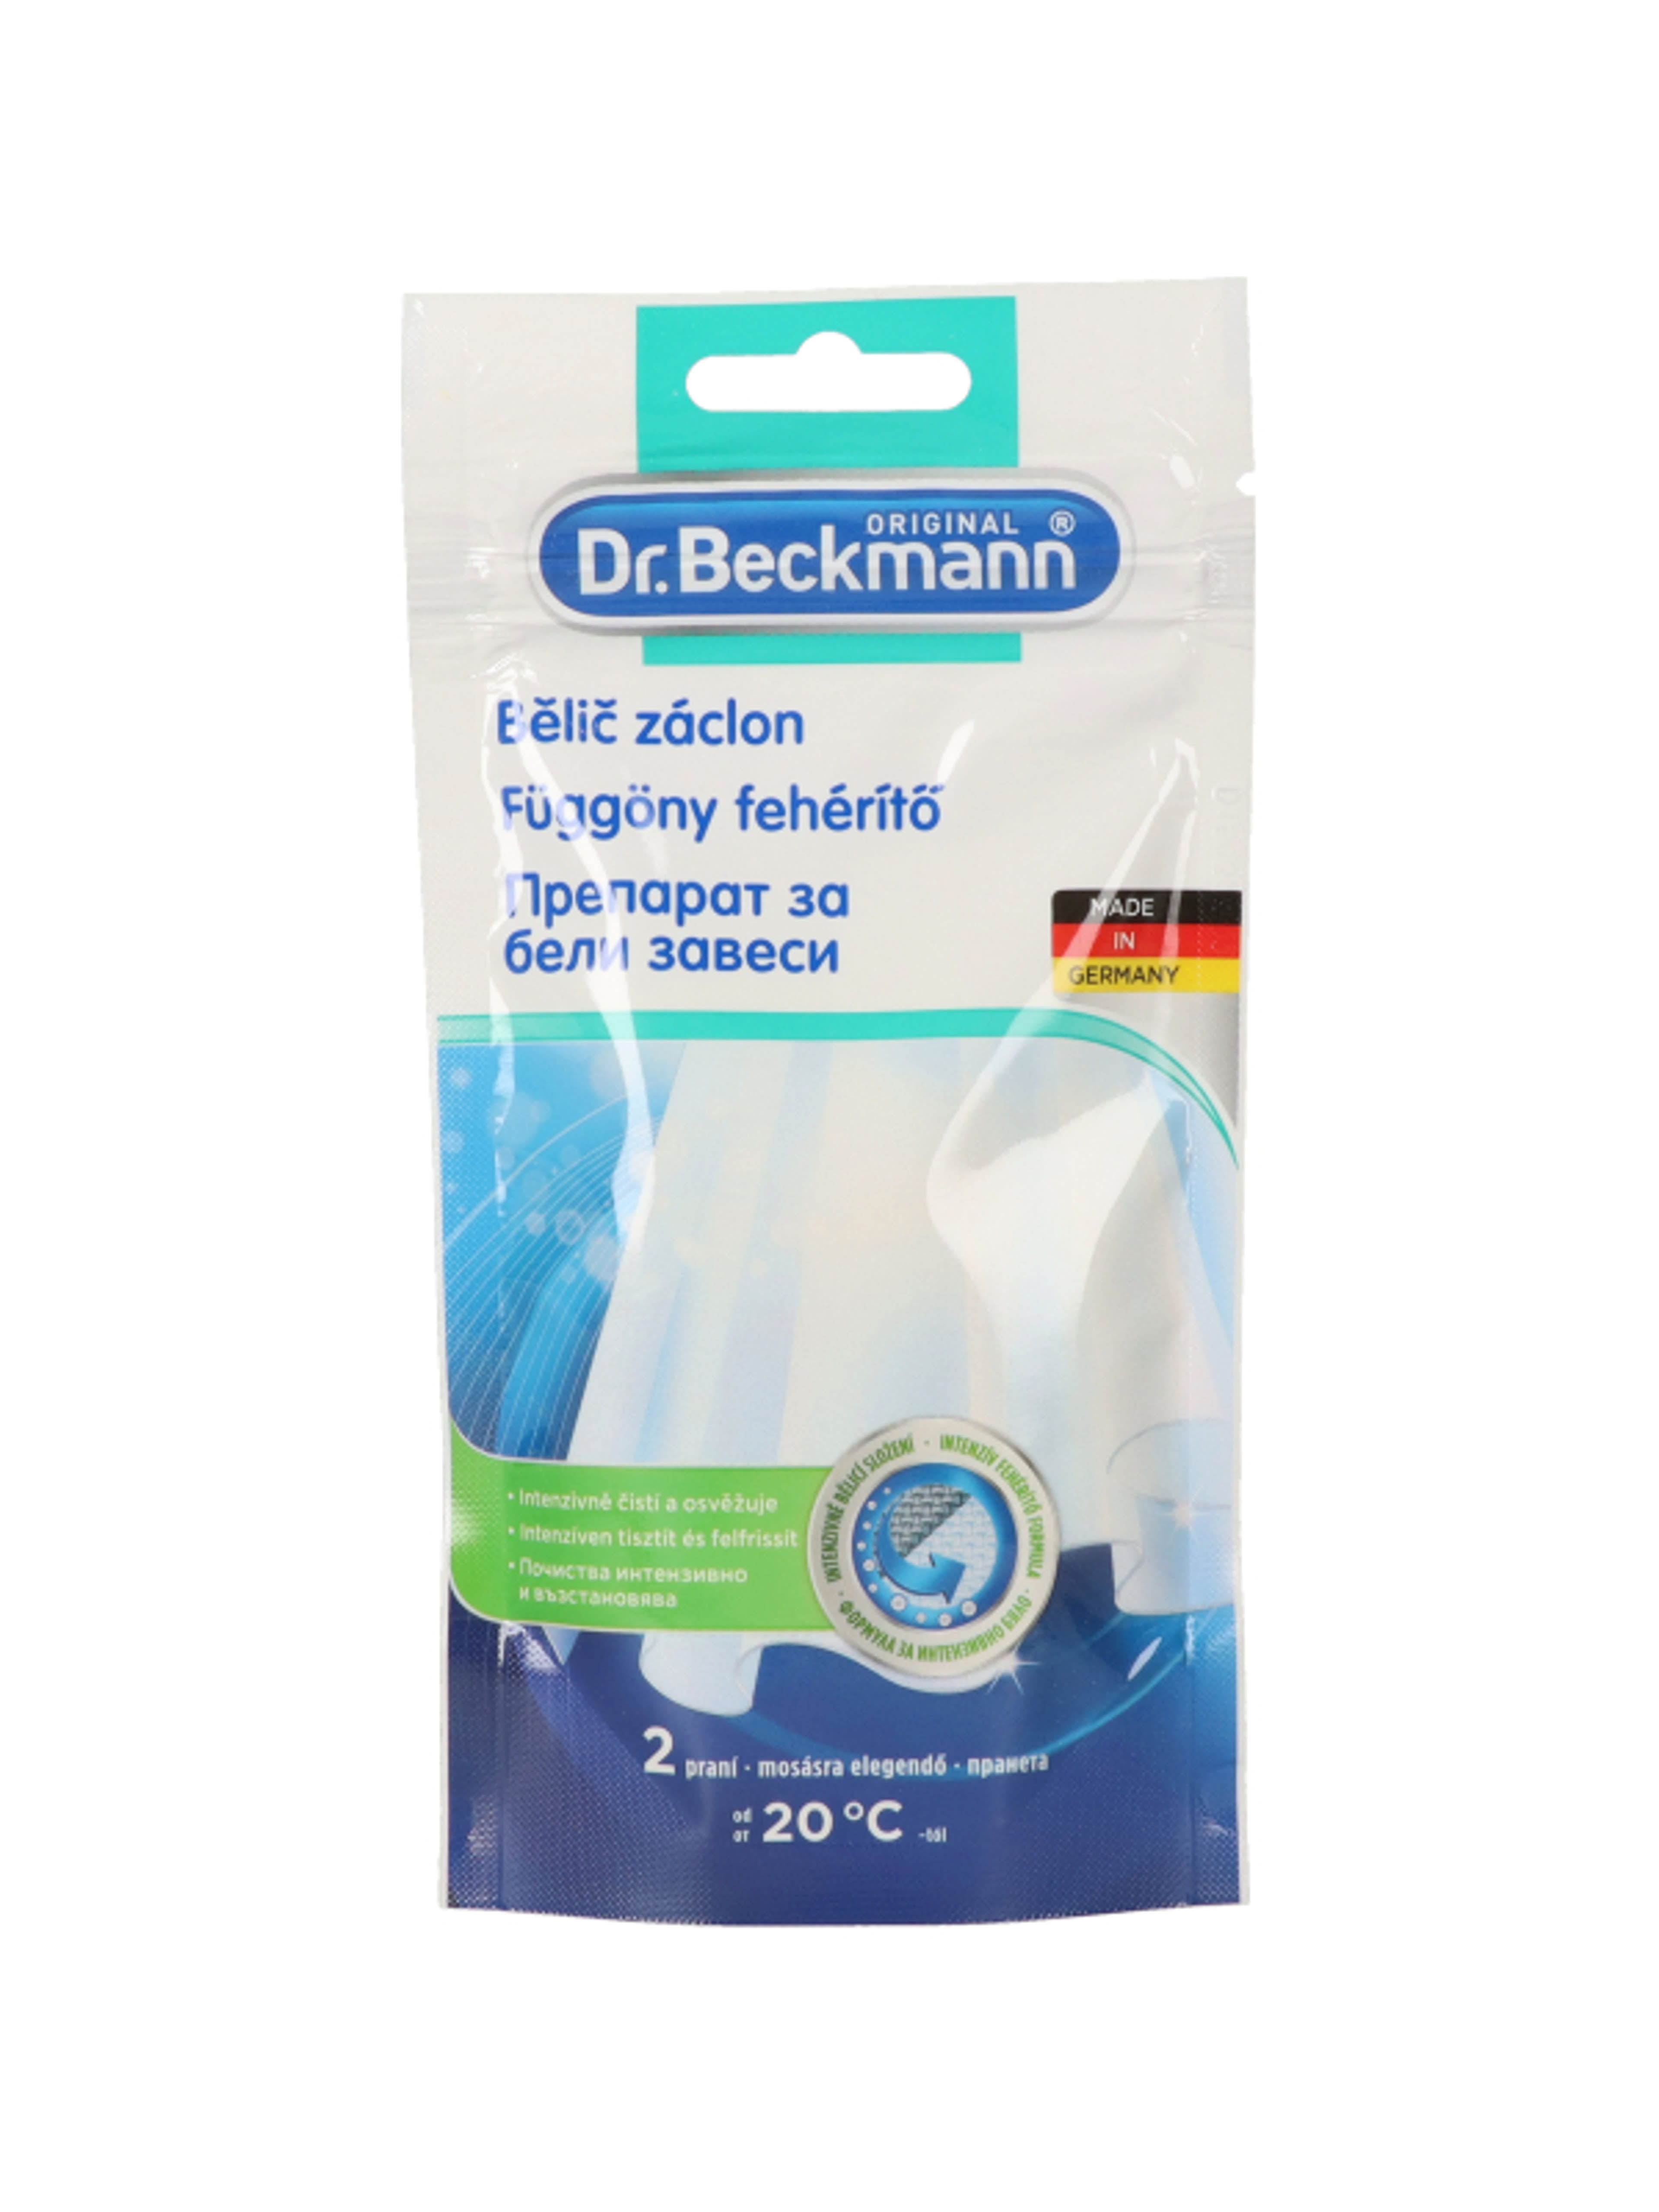 Dr.Beckmann függönyfehérítő - 80 g